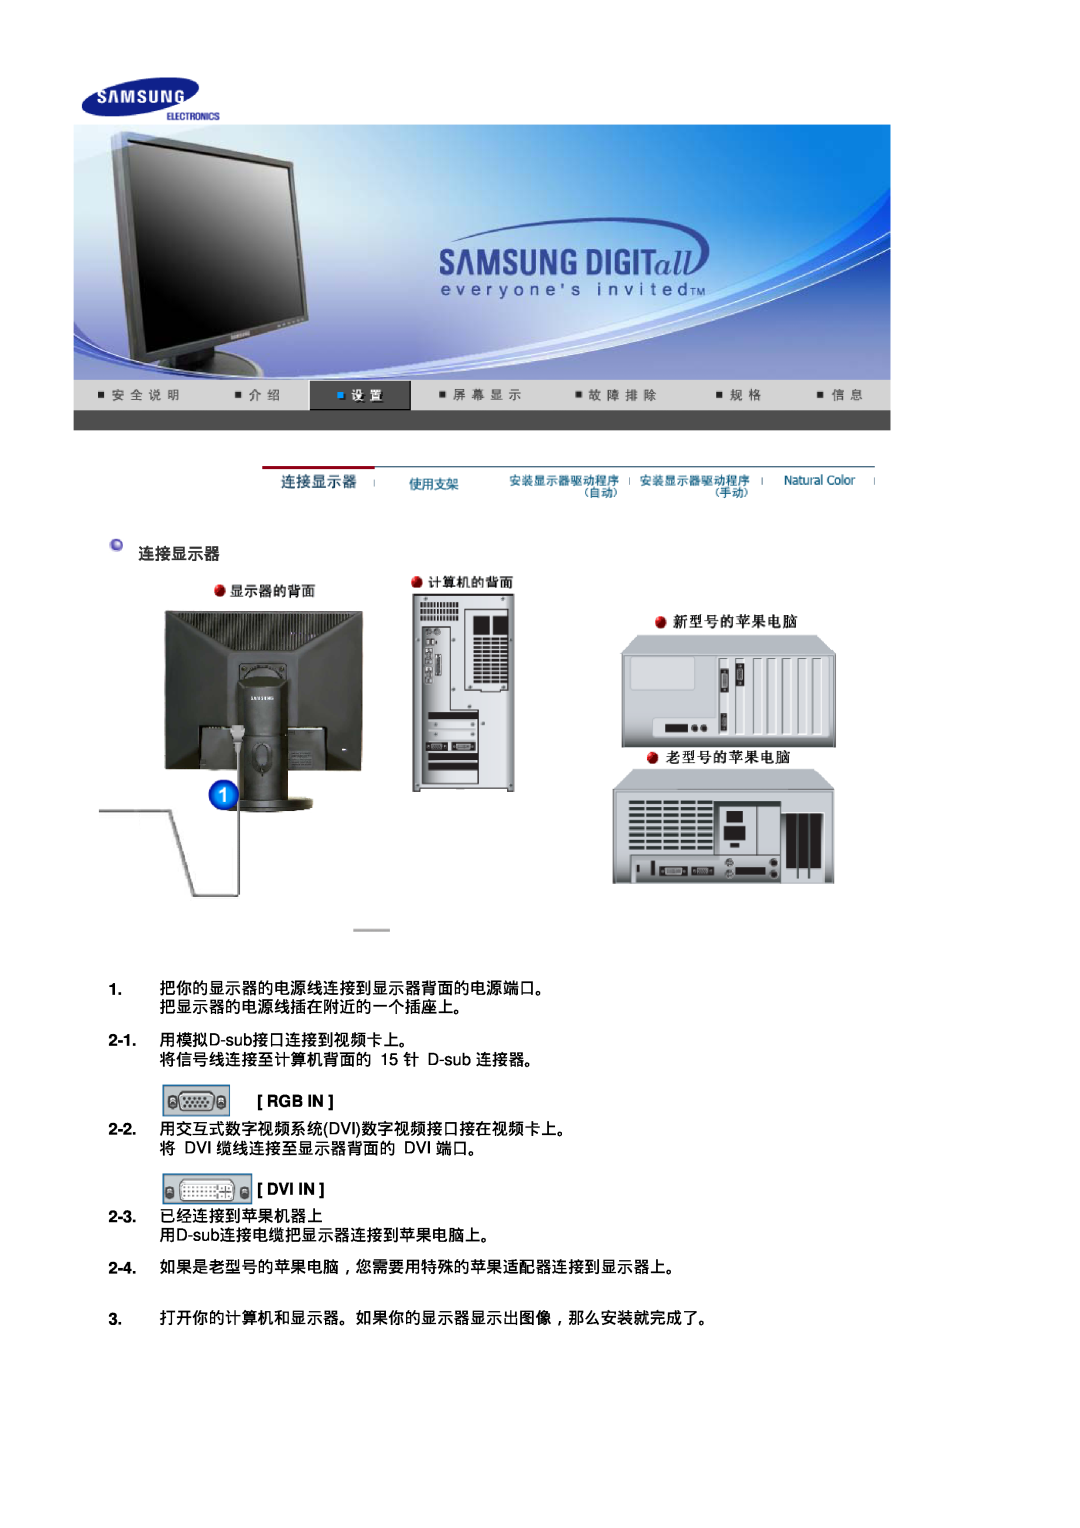 Samsung LS17HADKSX/EDC, LS19HADKSP/EDC manual 连接显示器, 1. 把你的显示器的电源线连接到显示器背面的电源端口。 把显示器的电源线插在附近的一个插座上。, Rgb In, Dvi In 